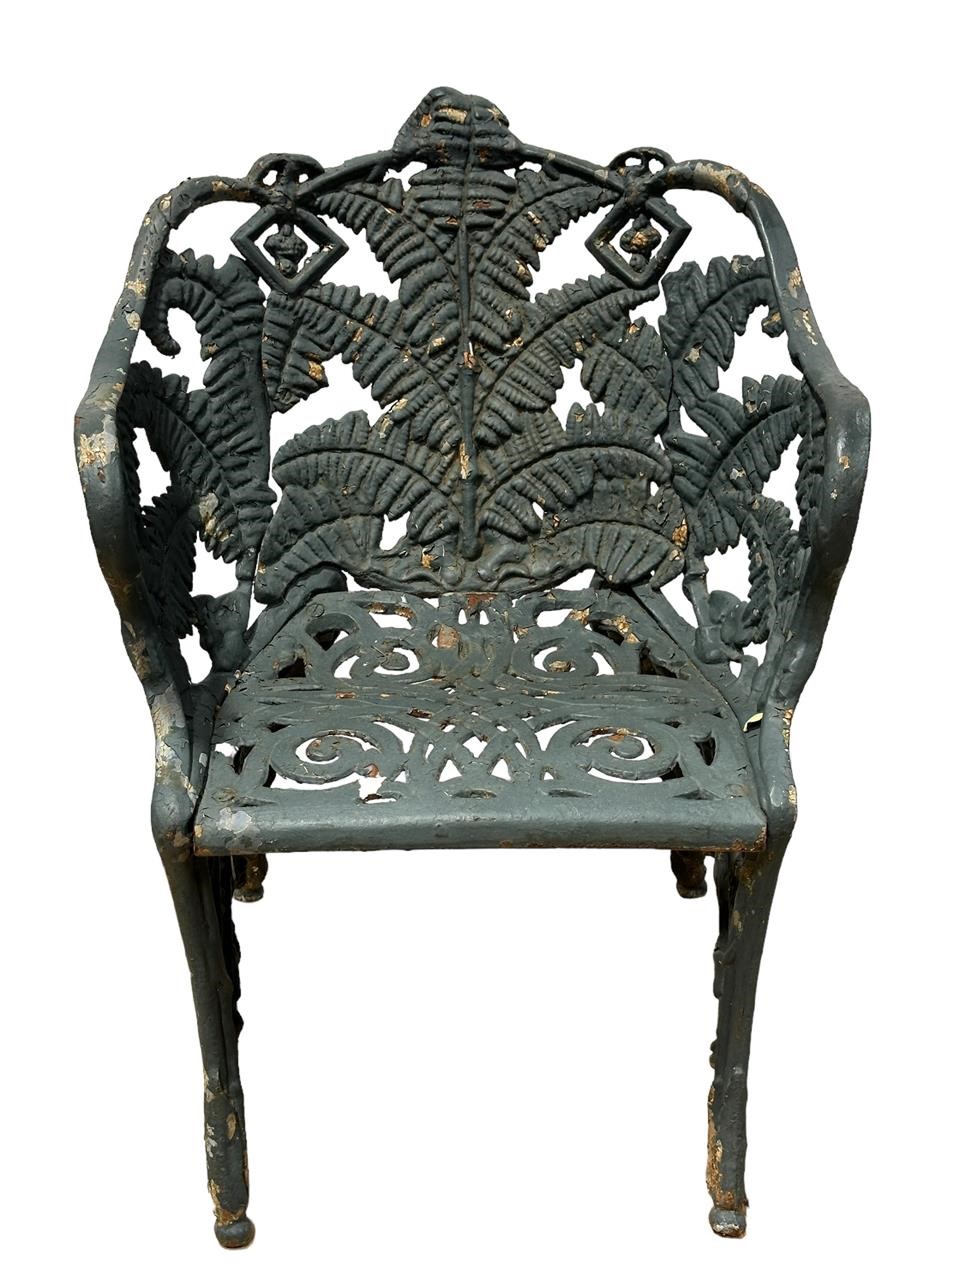 Wrought Iron Outdoor Garden Chair